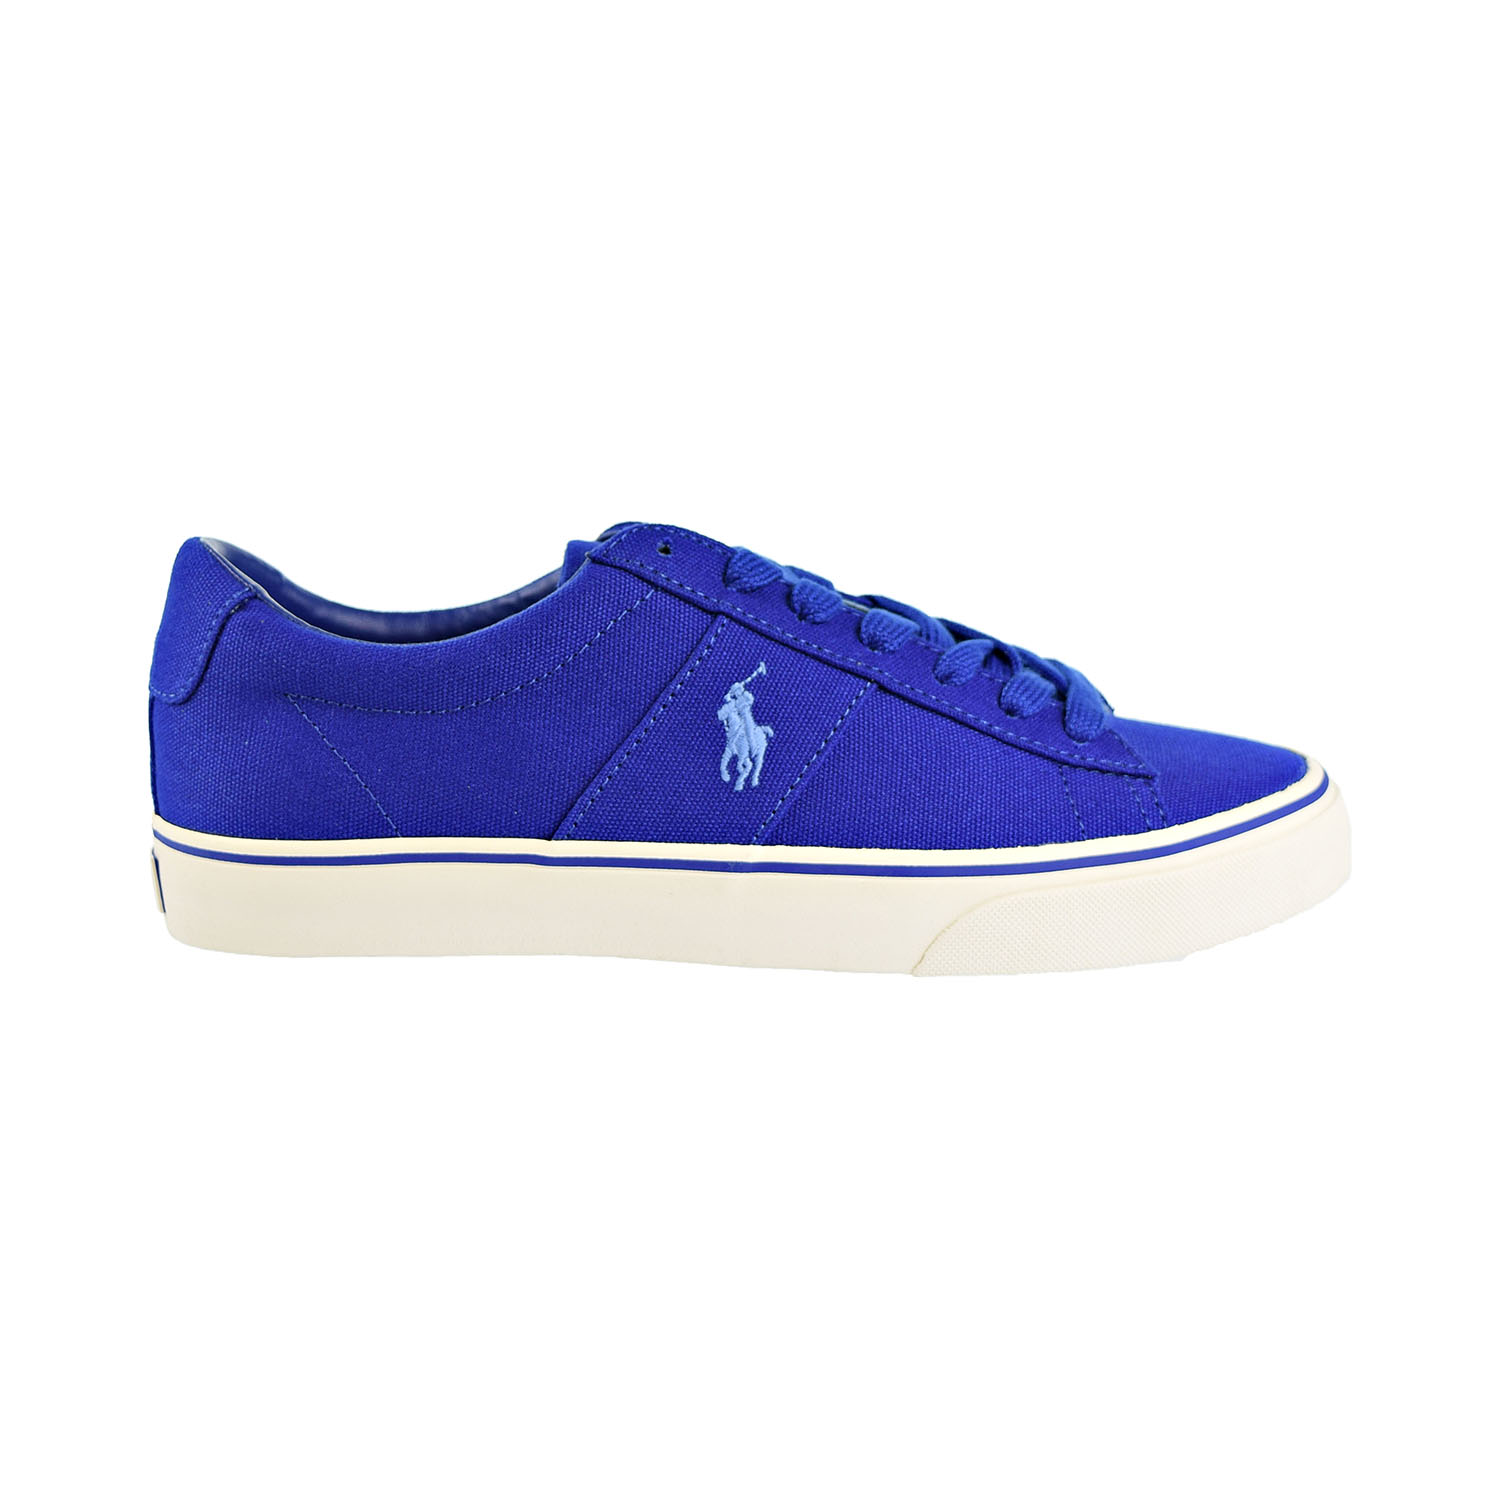 Polo Ralph Lauren Sayer Men's Shoes Blue 816710017-003 - image 1 of 6